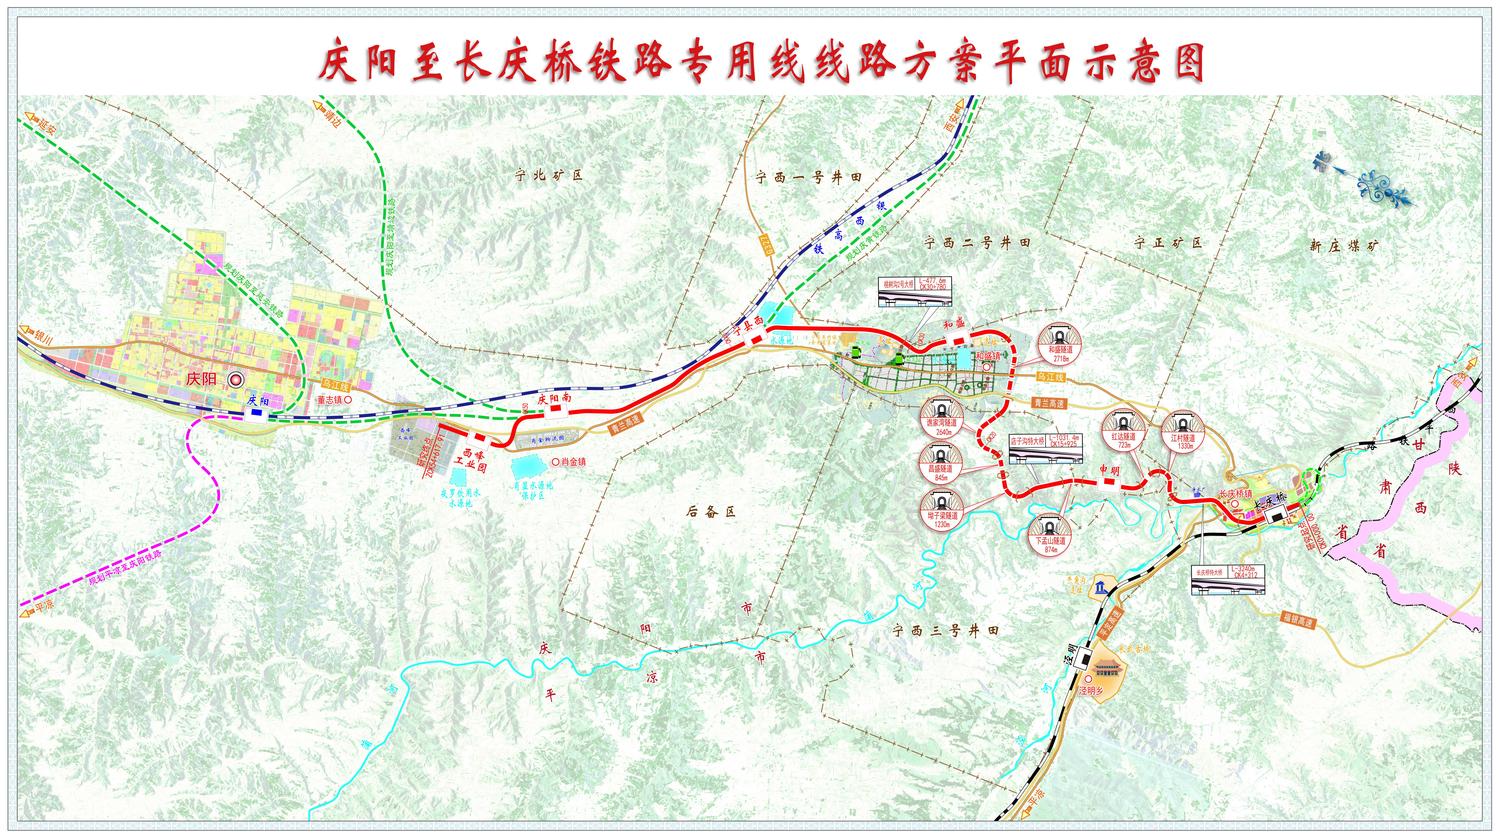 慶陽至長慶橋鐵路線路方案平面示意圖-01壓縮.jpg